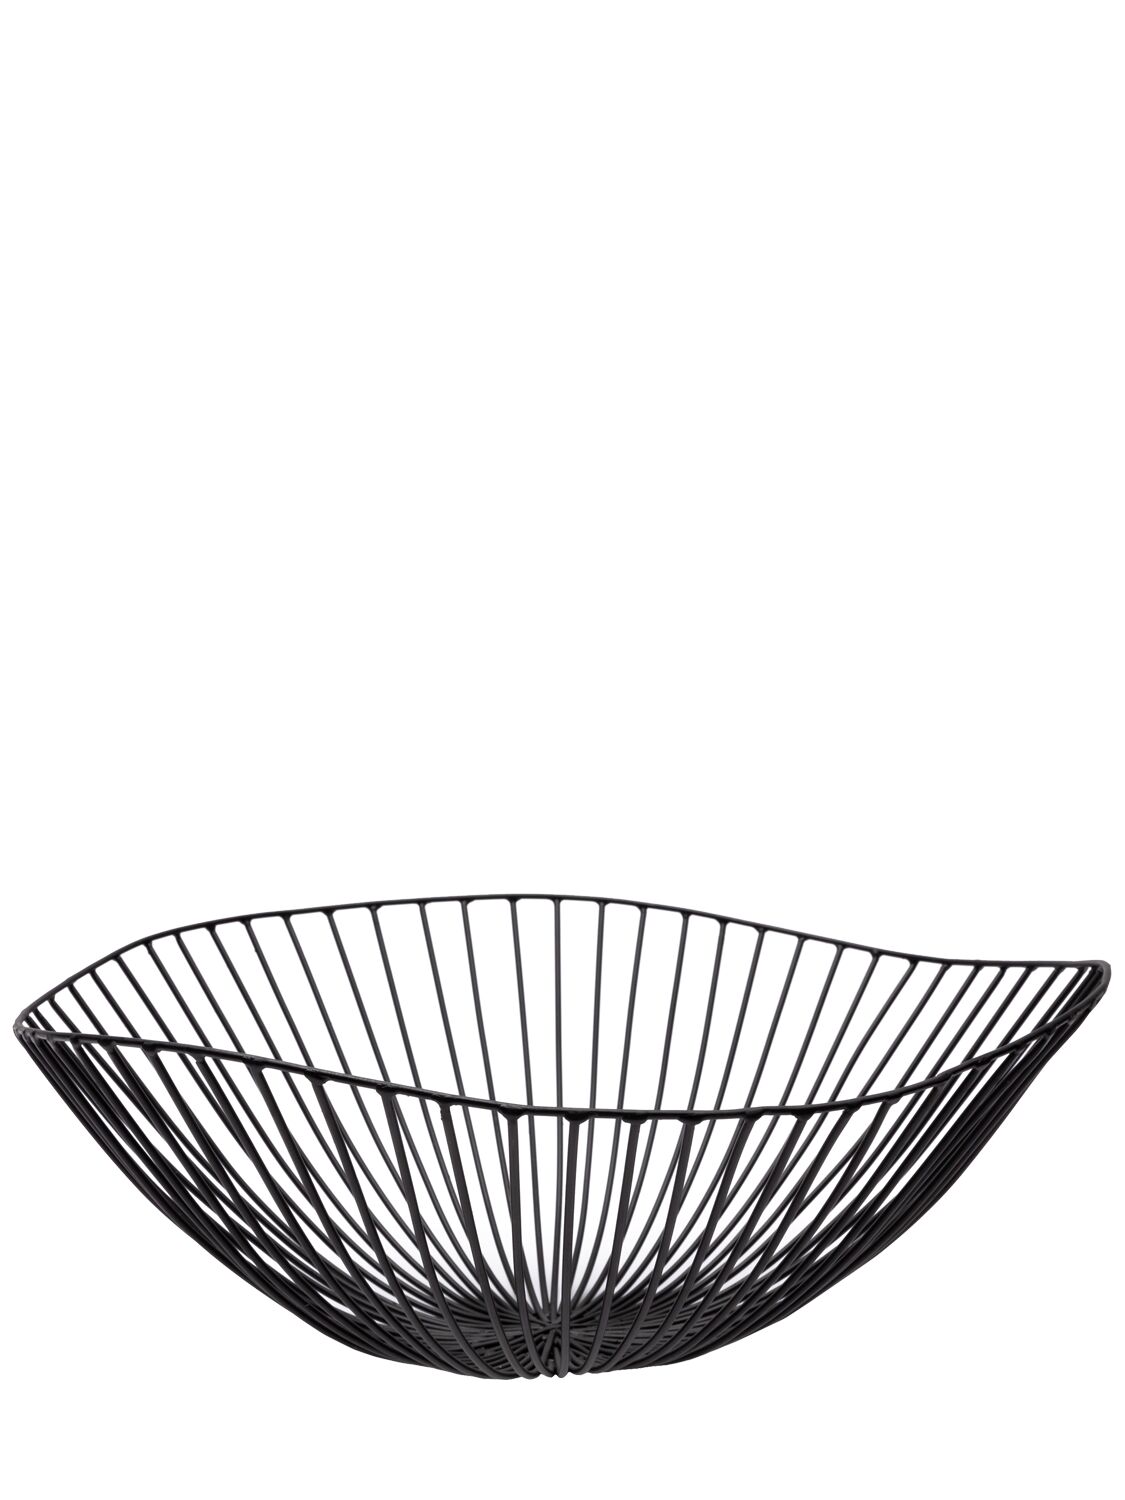 Image of Black Cesira Basket